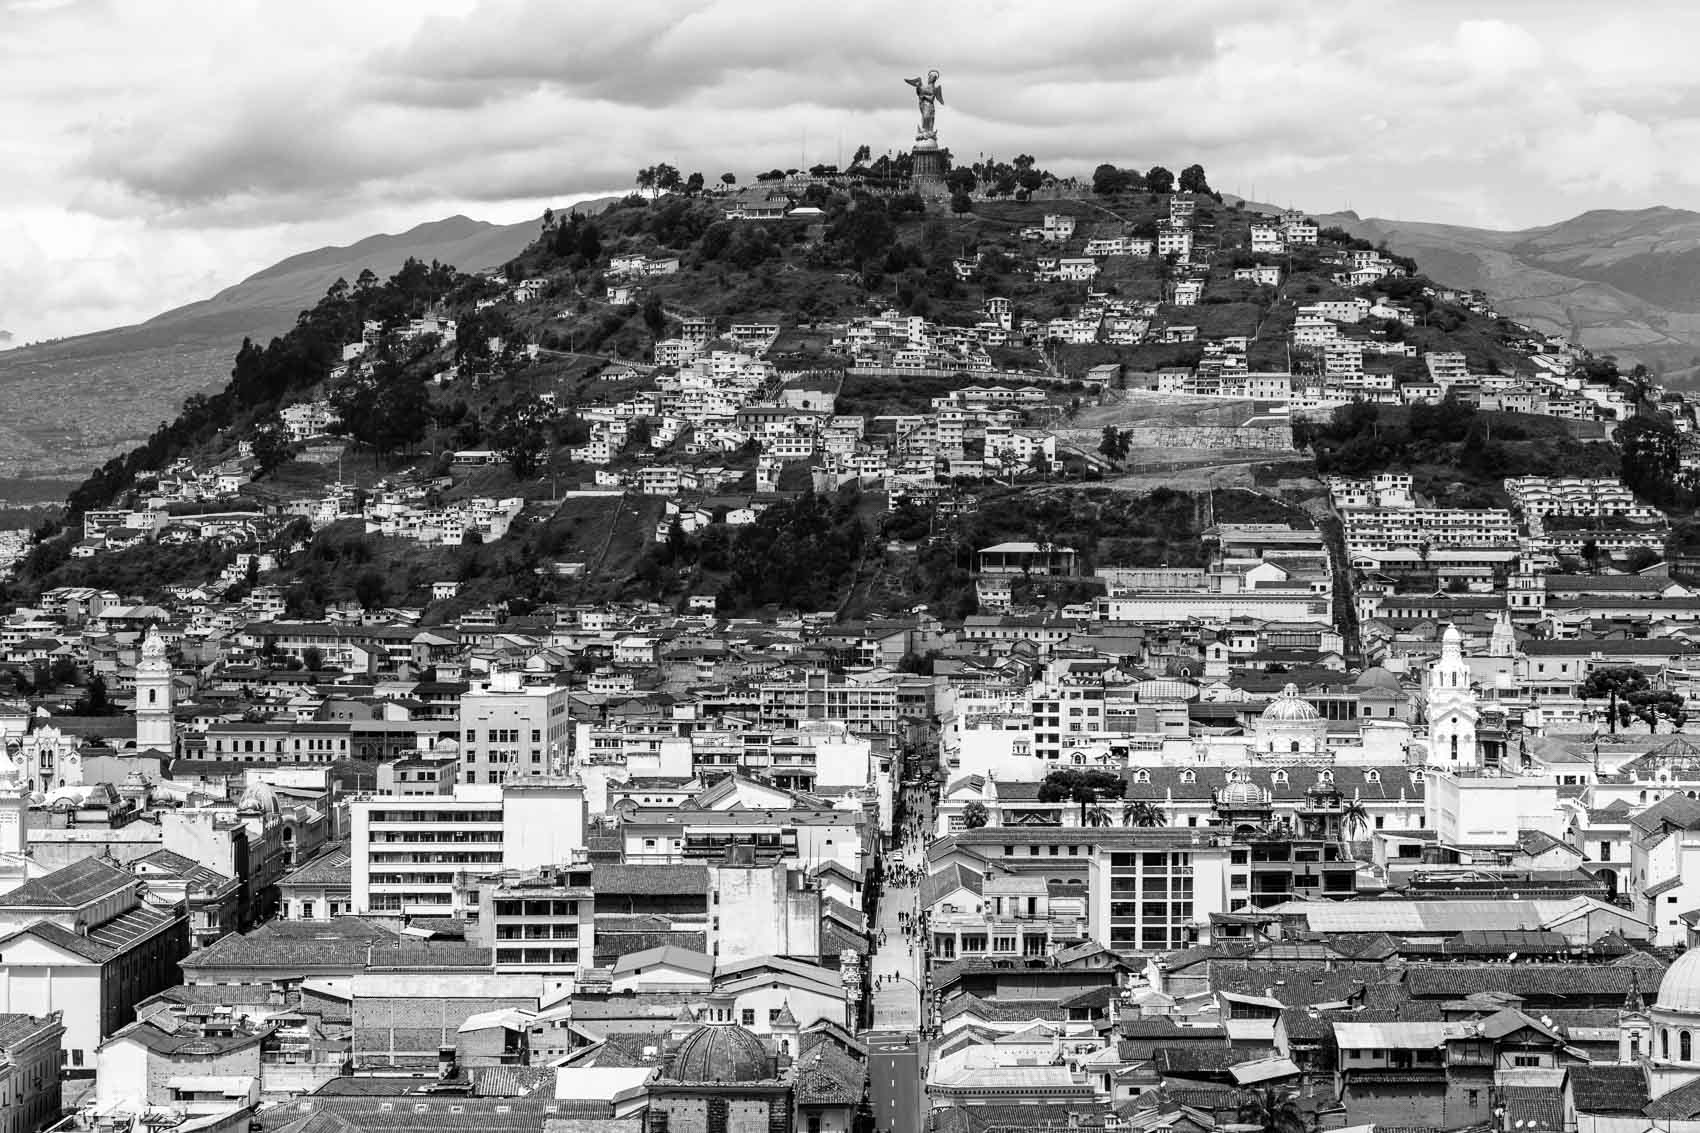  Quito, 2019
 